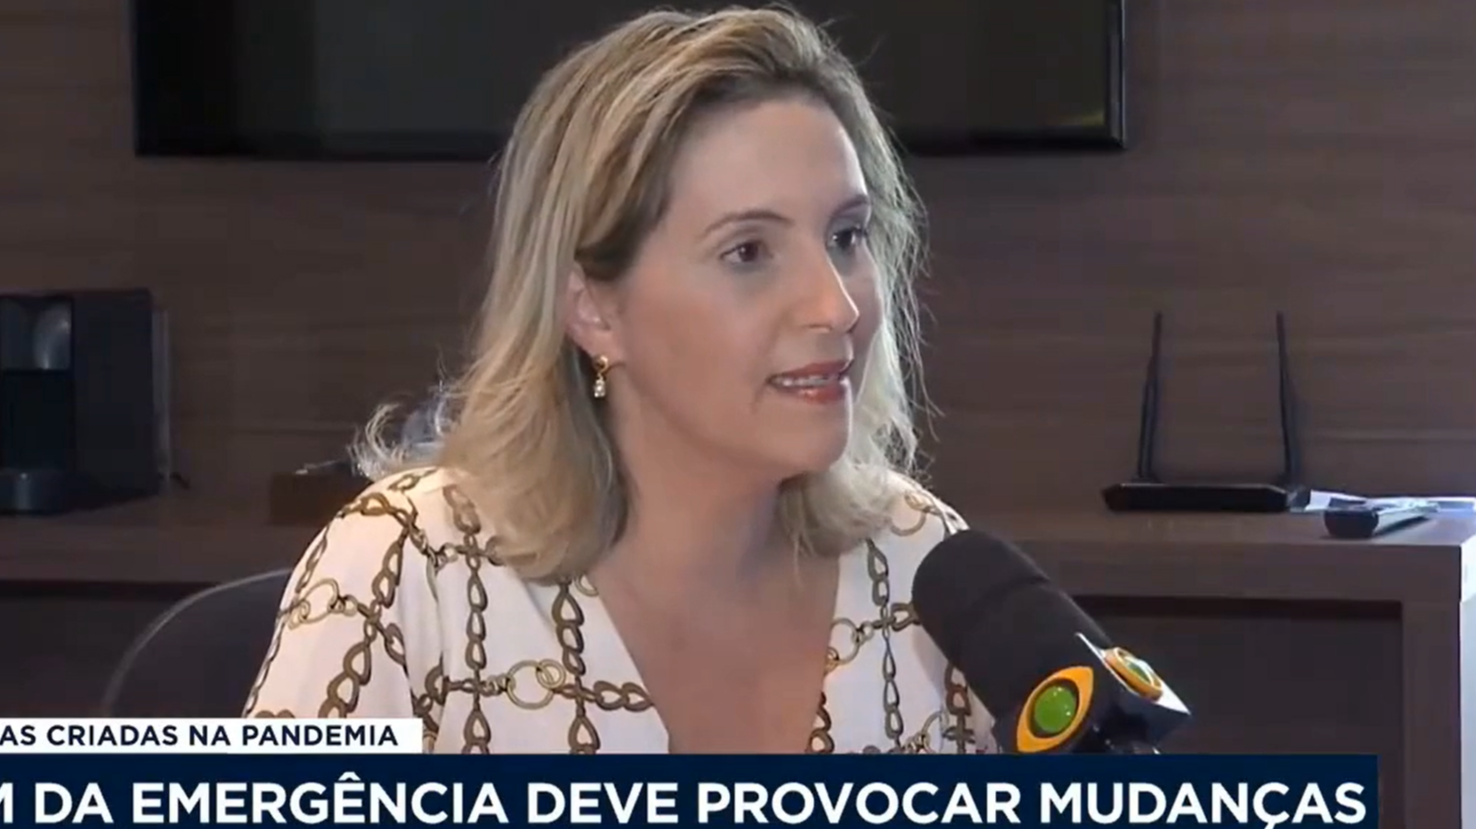 You are currently viewing Entrevista na TV Band Cidade – Fim da Emergência deve provocar mudanças – Com Daniela Bibiano.